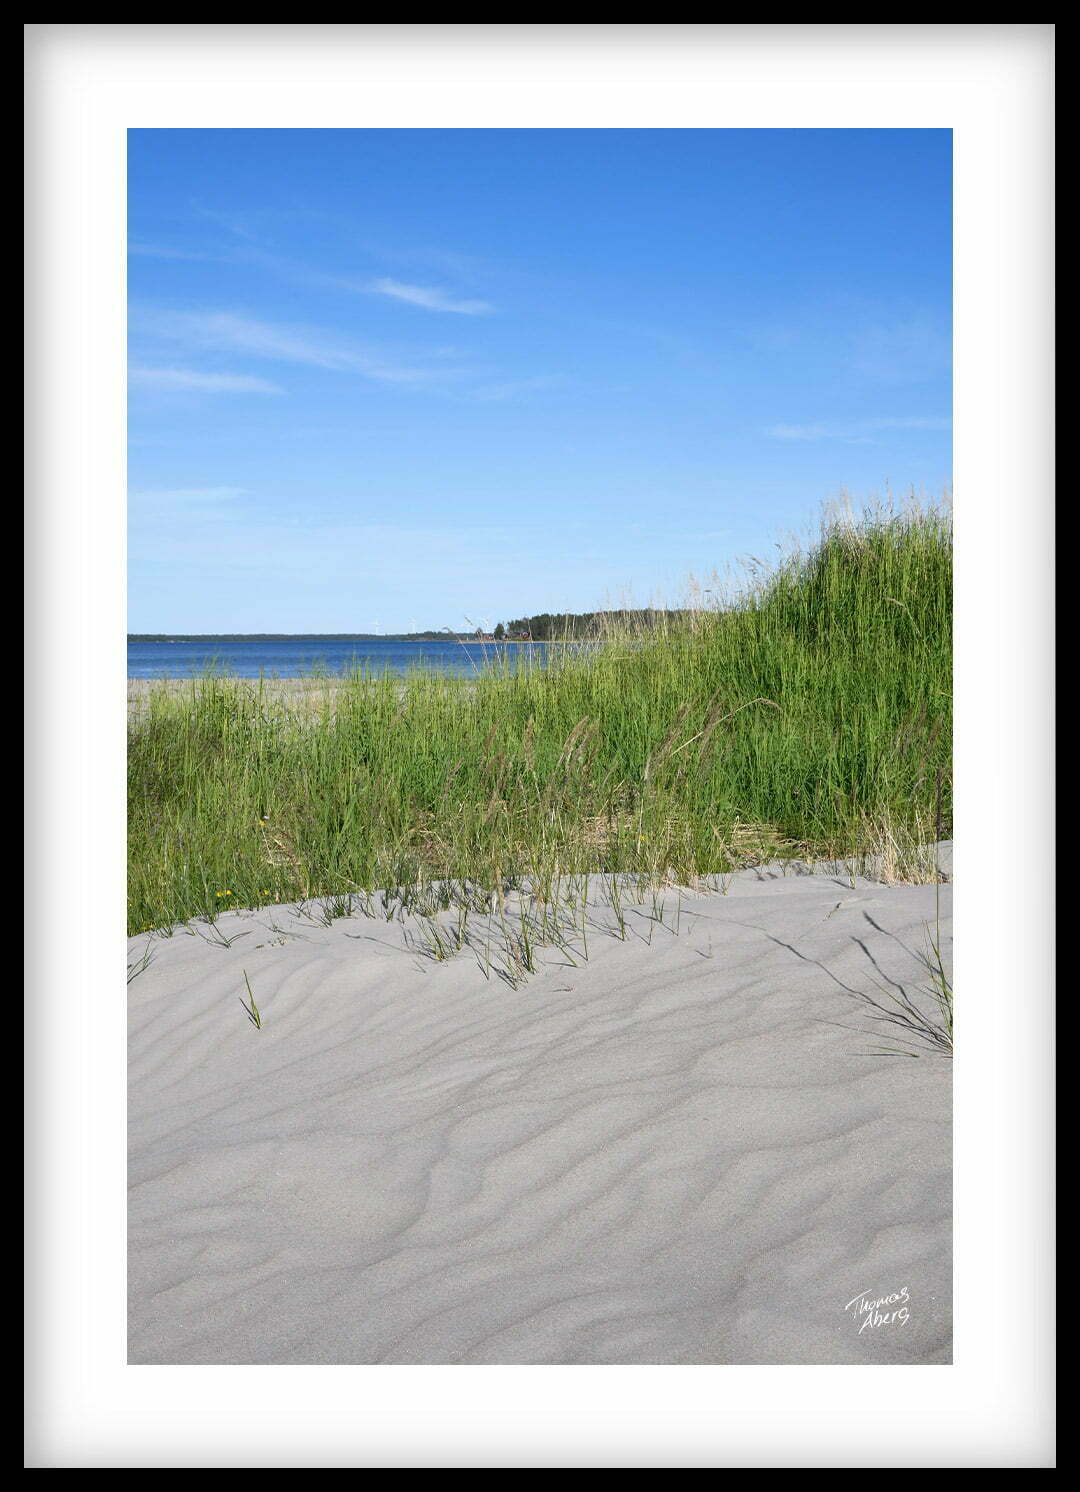 Tavla 00135 Pite havsbad vit sand strandråg blått vatten och himmel